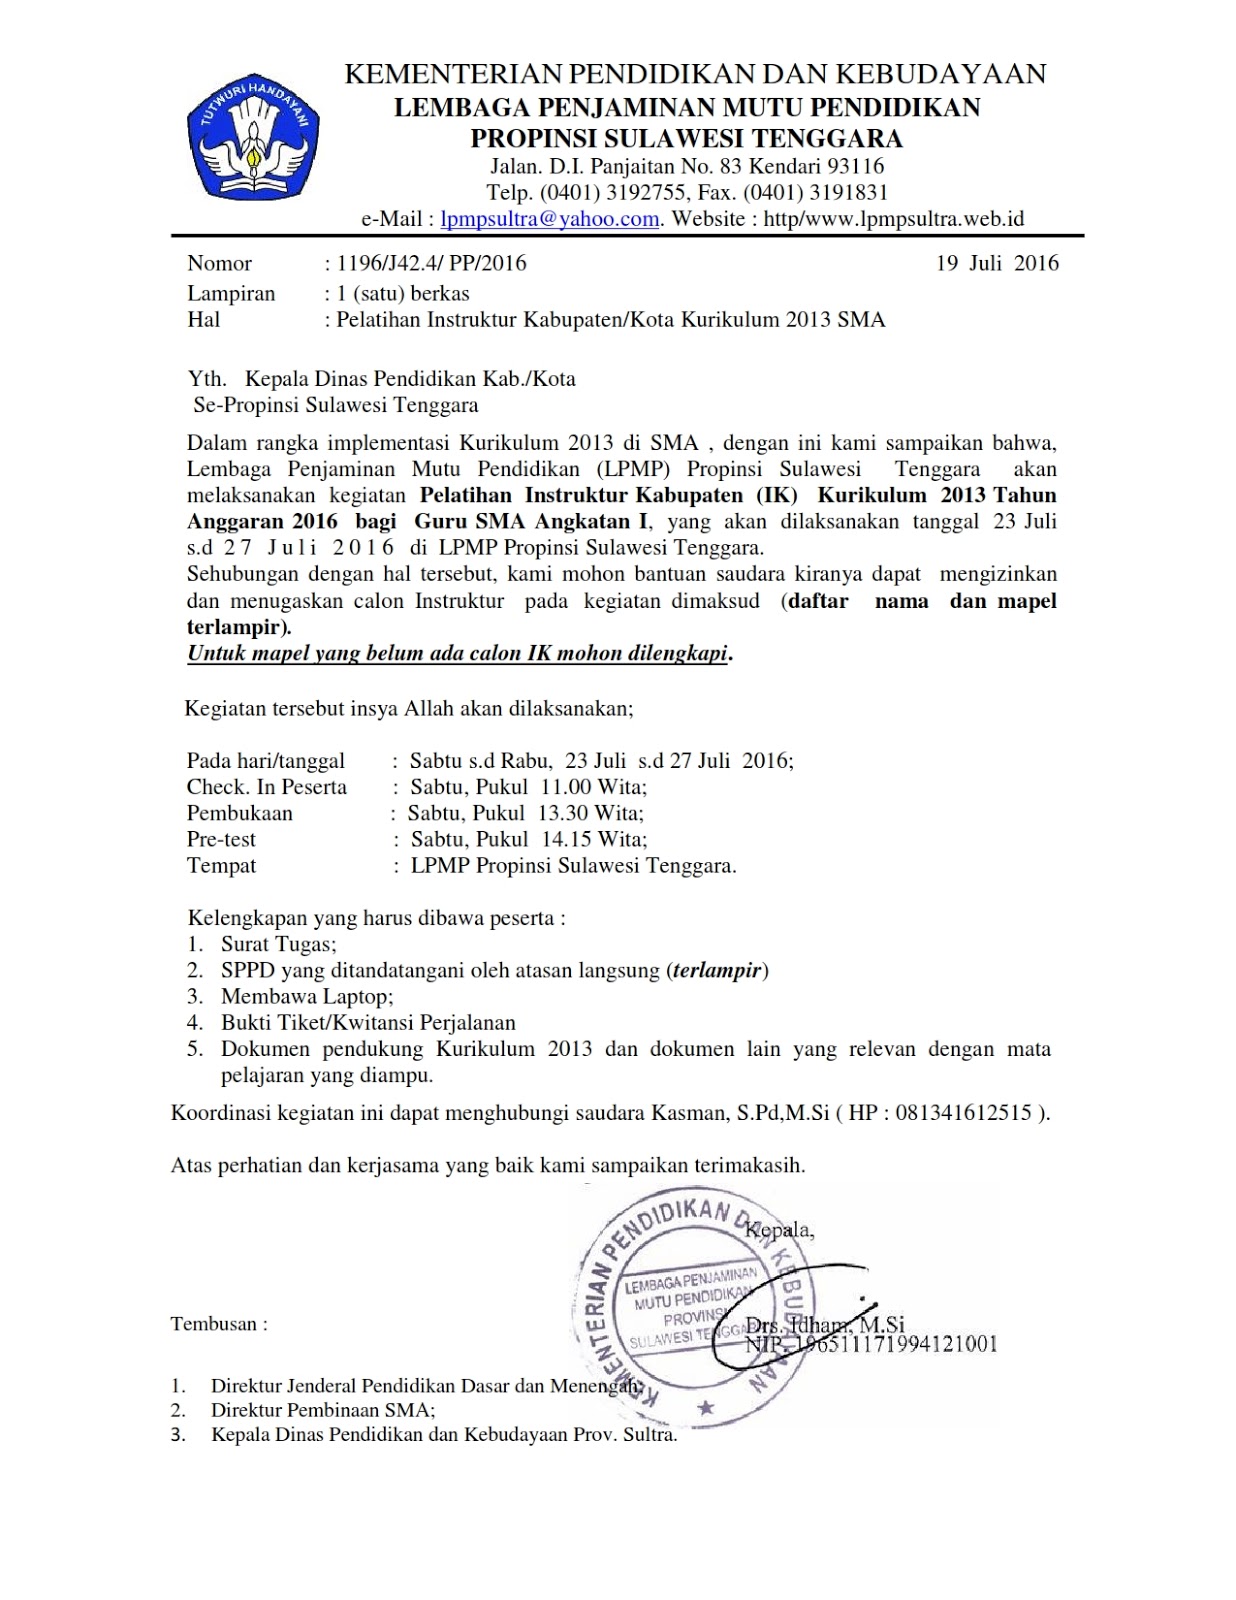 Sultra mengenai kegiatan Workshop Pelatihan Instruktur Kabupaten Kota Kurikulum 2013 SMA yang direncanakan akan dimulai pada hari Sabtu tanggal 23 Juli s d